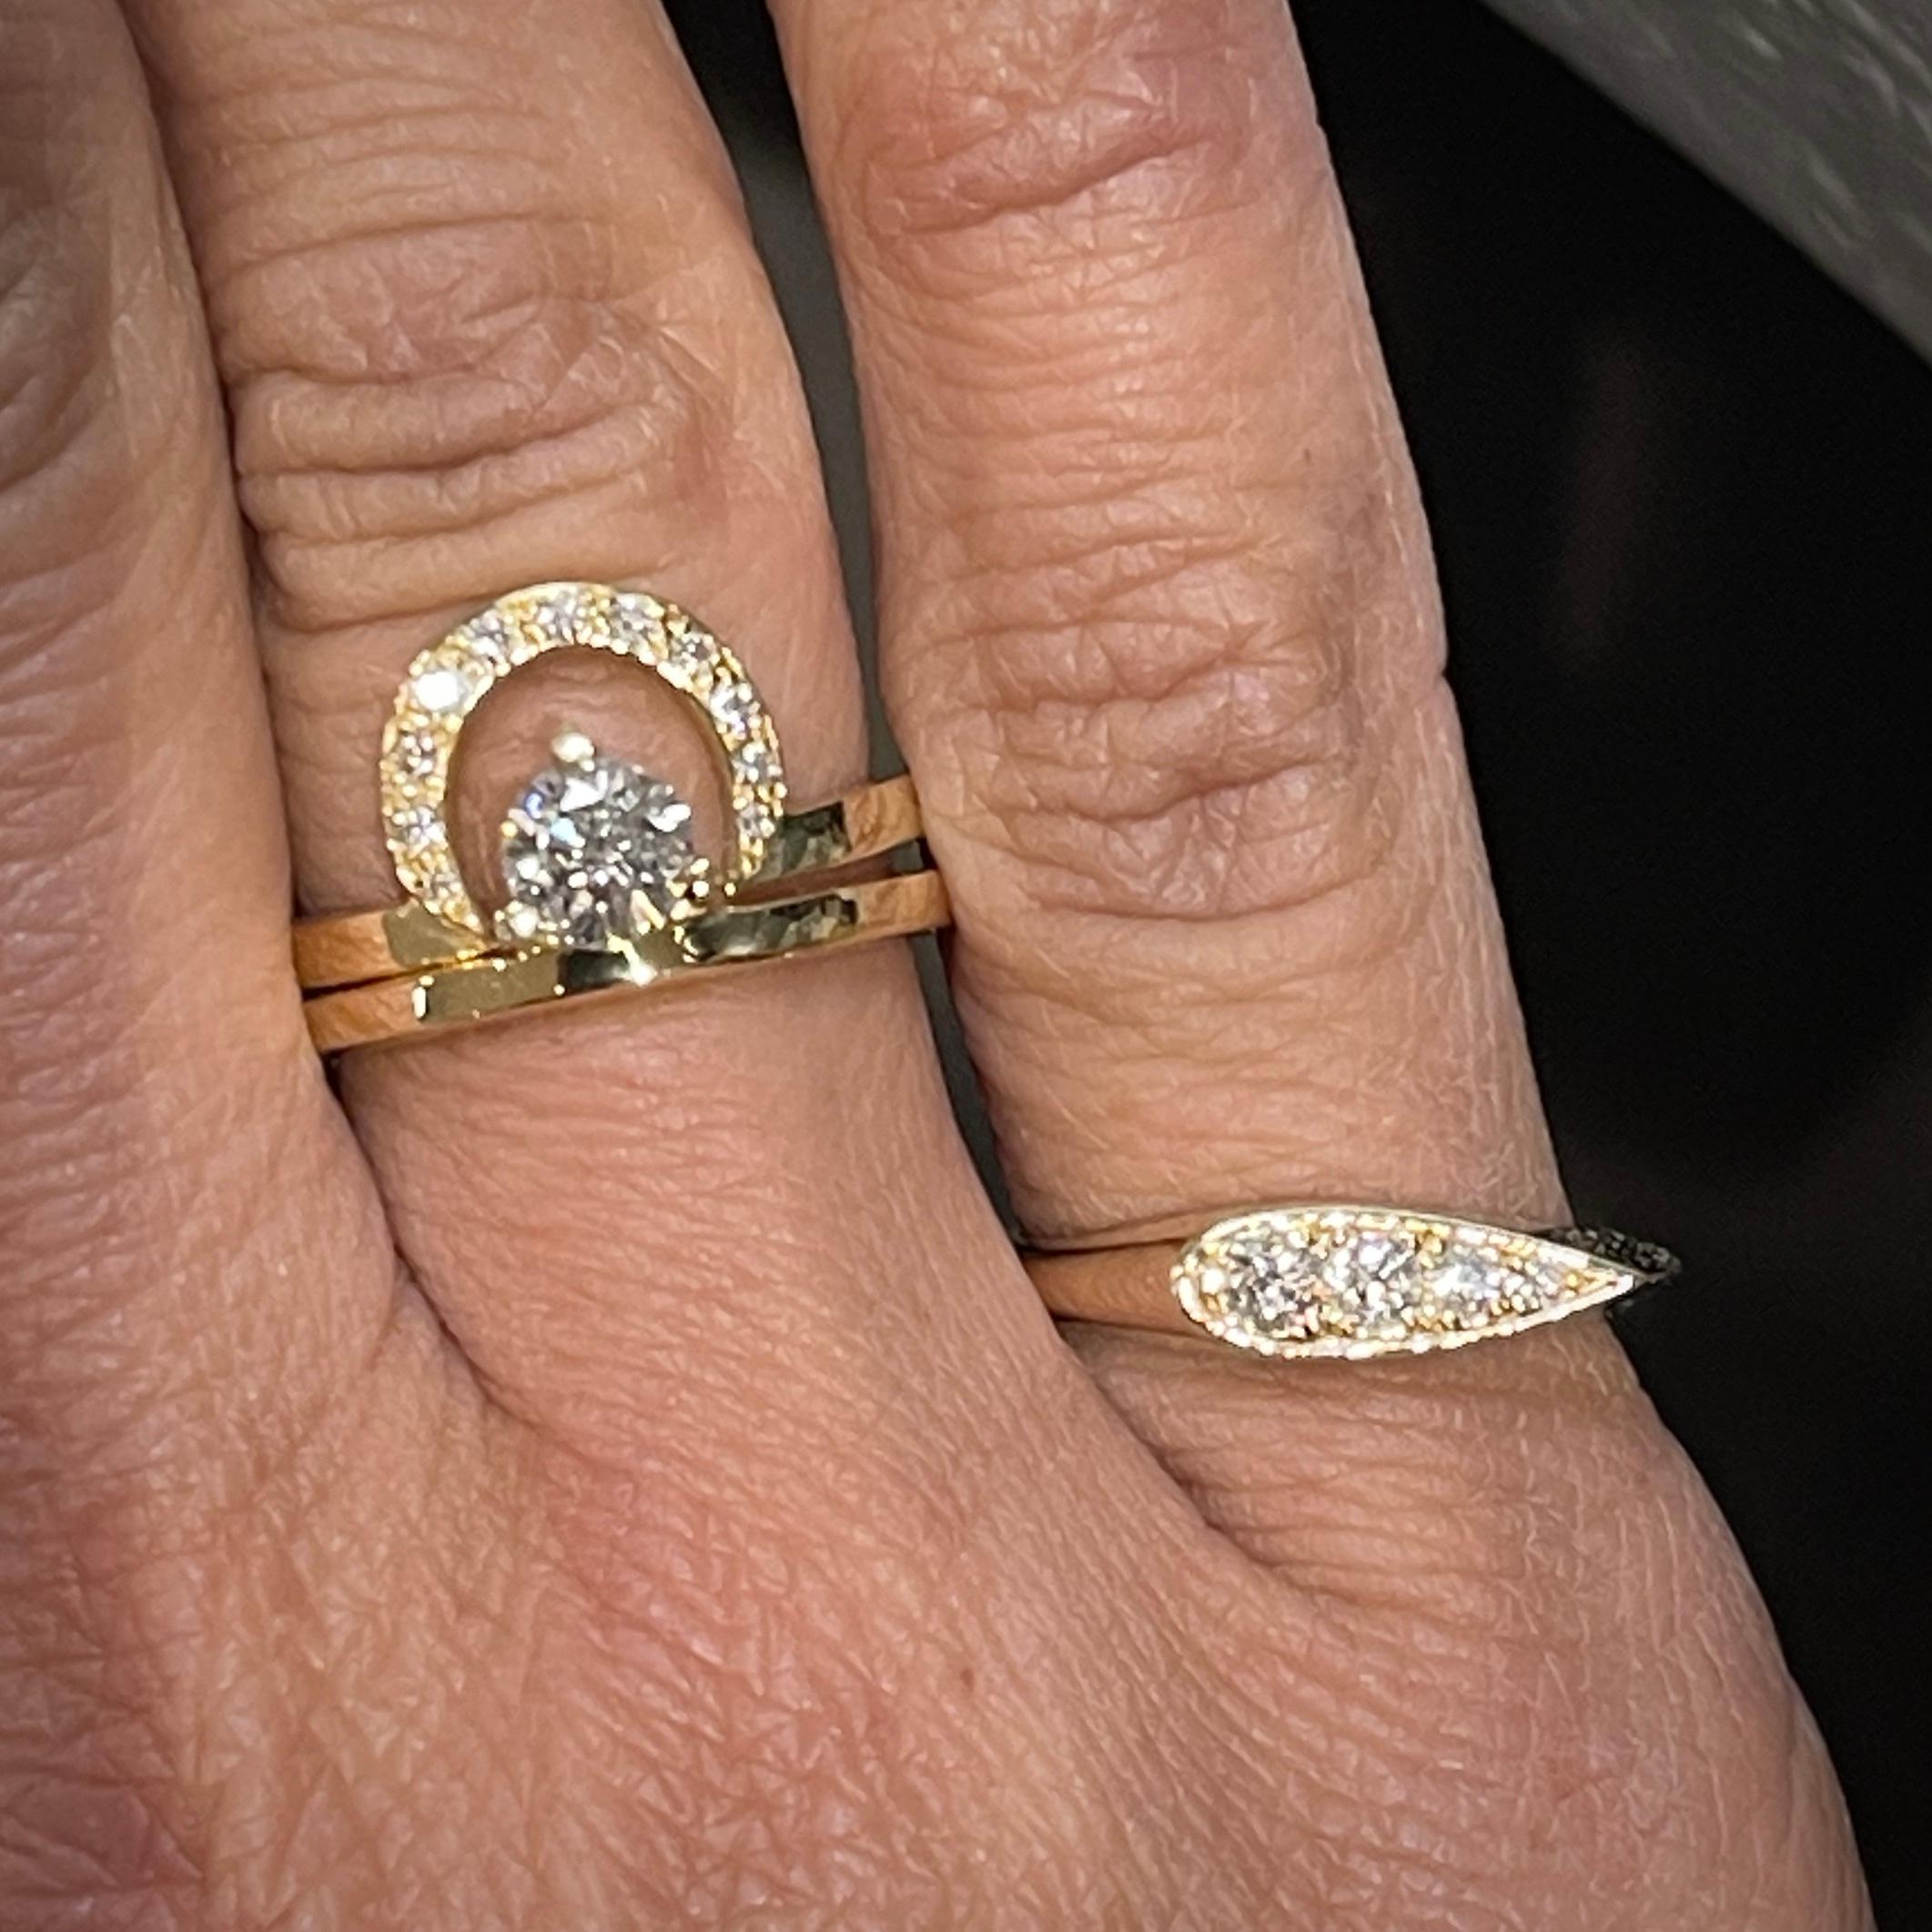 Entdecken Sie die Eleganz und Vielseitigkeit unseres massiven 14-karätigen Siegelrings mit Diamantbesatz in länglicher Birne. Dieses atemberaubende Stück besteht aus einer länglichen Birnenform, die aus 14-karätigem Gold gefertigt und mit 4 